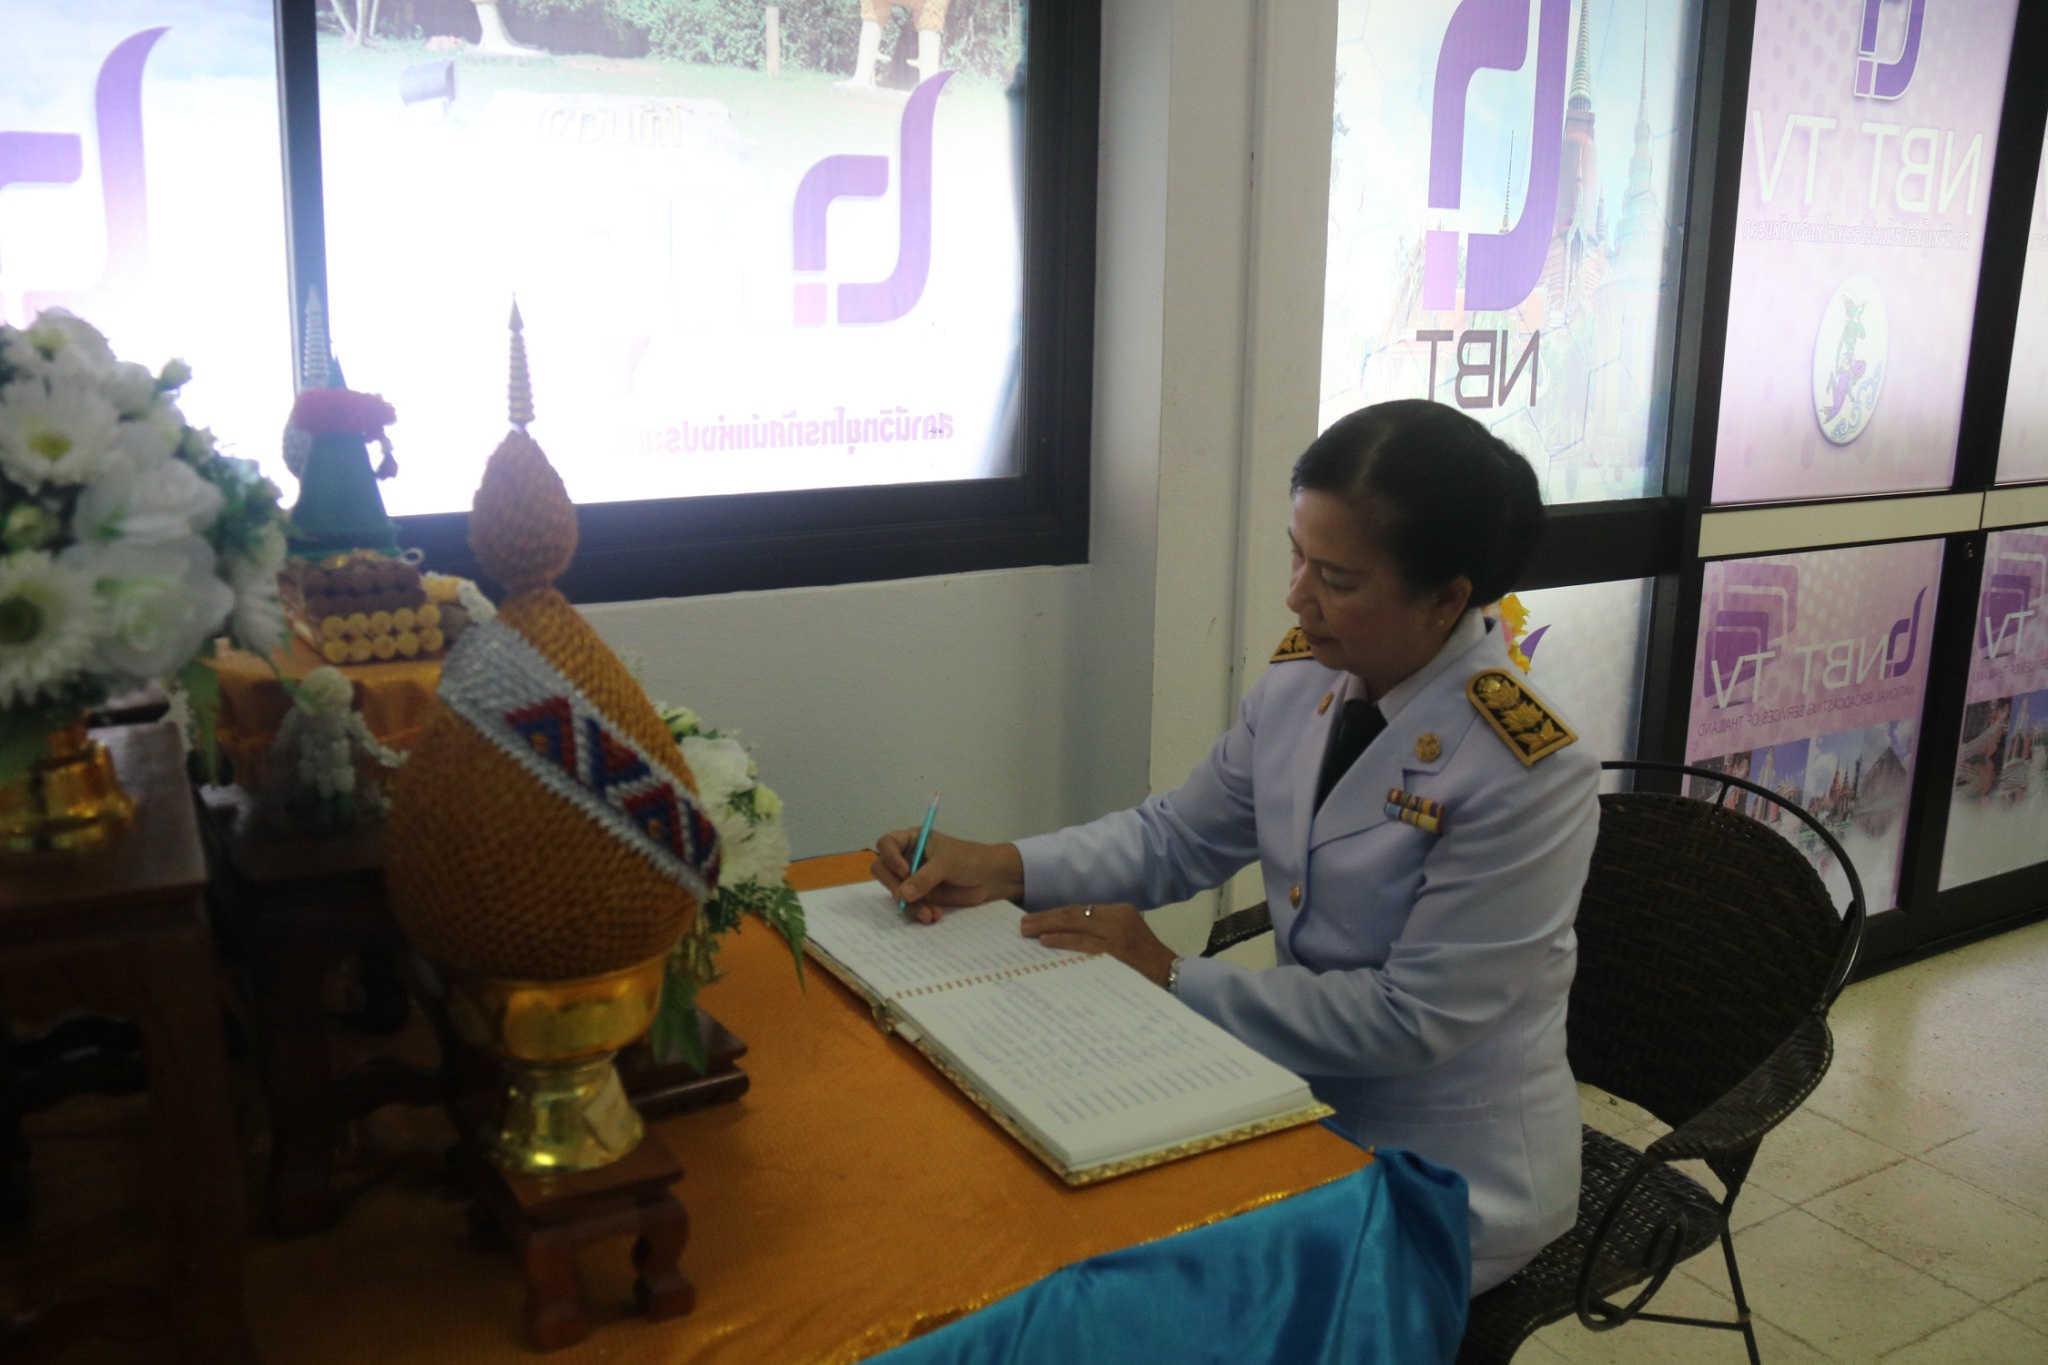  องค์การบริหารส่วนจังหวัดยะลา ร่วมบันทึกเทปถวายพระพรเนื่องในโอกาสวันเฉลิมพระชนมพรรษา สมเด็จพระนางเจ้าสิริกิติ์ พระบรมราชินีนาถ ในรัชกาลที่ ๙ ณ สถานีโทรทัศน์แห่งประเทศไทย จ.ยะลา